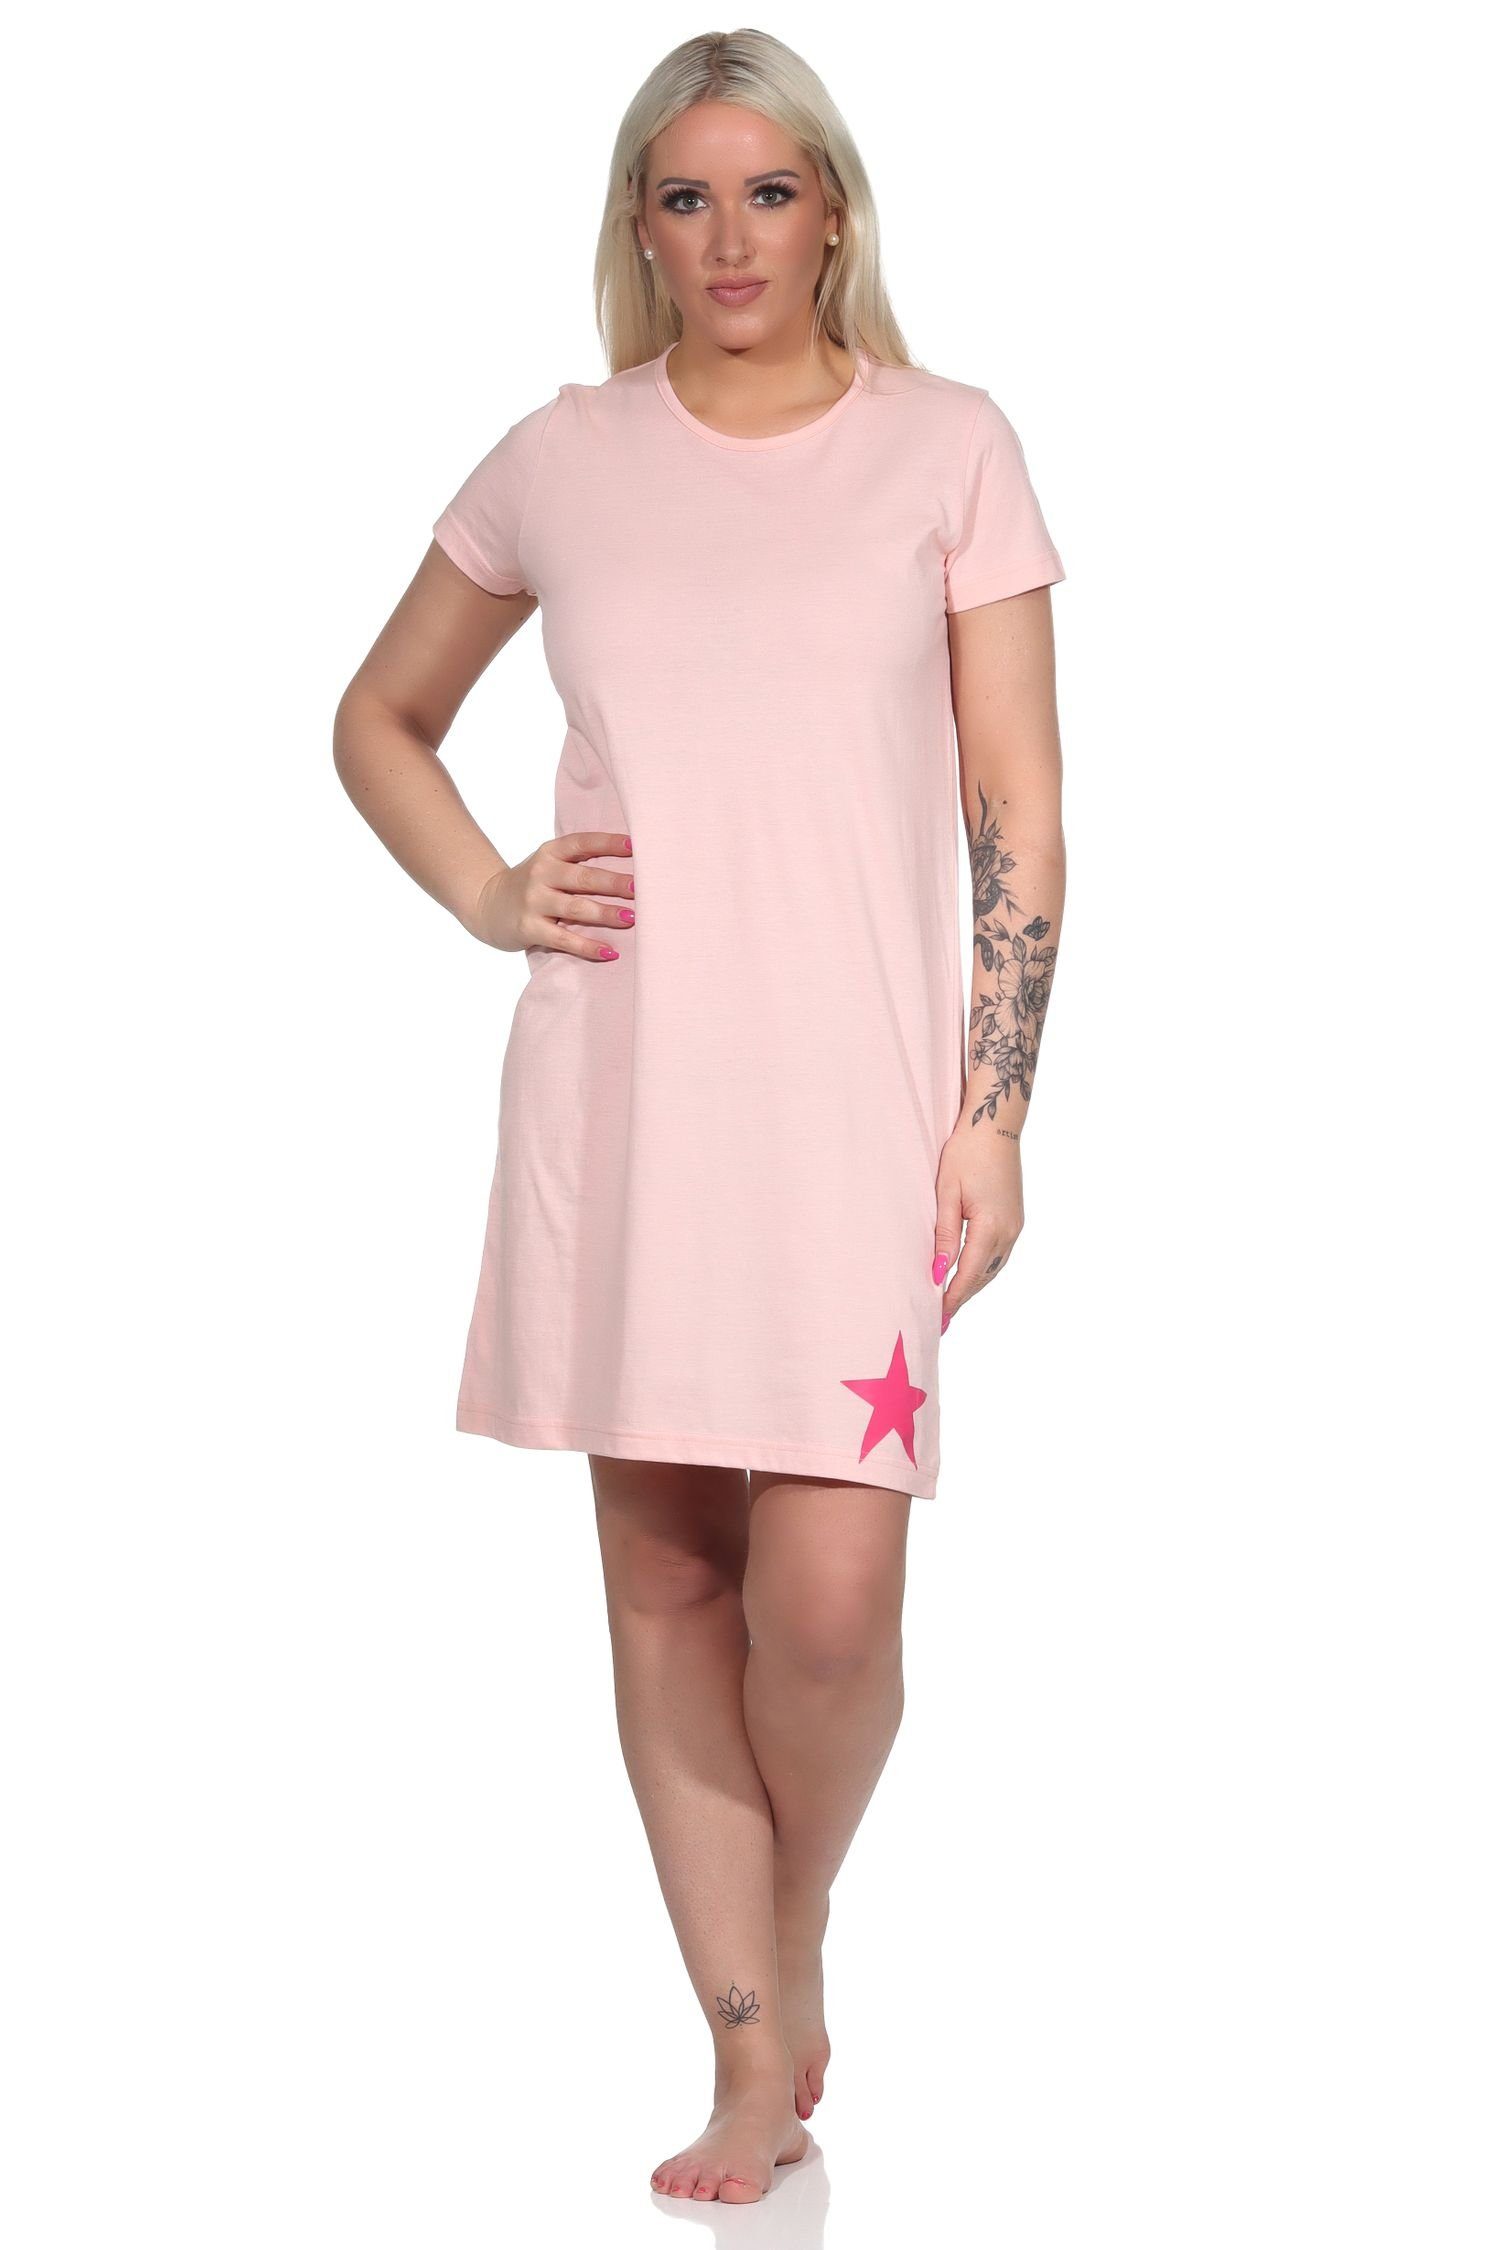 Normann Bigshirt Kurznachthemd, mit Stern-Applikation Damen schöner Nachthemd rosa